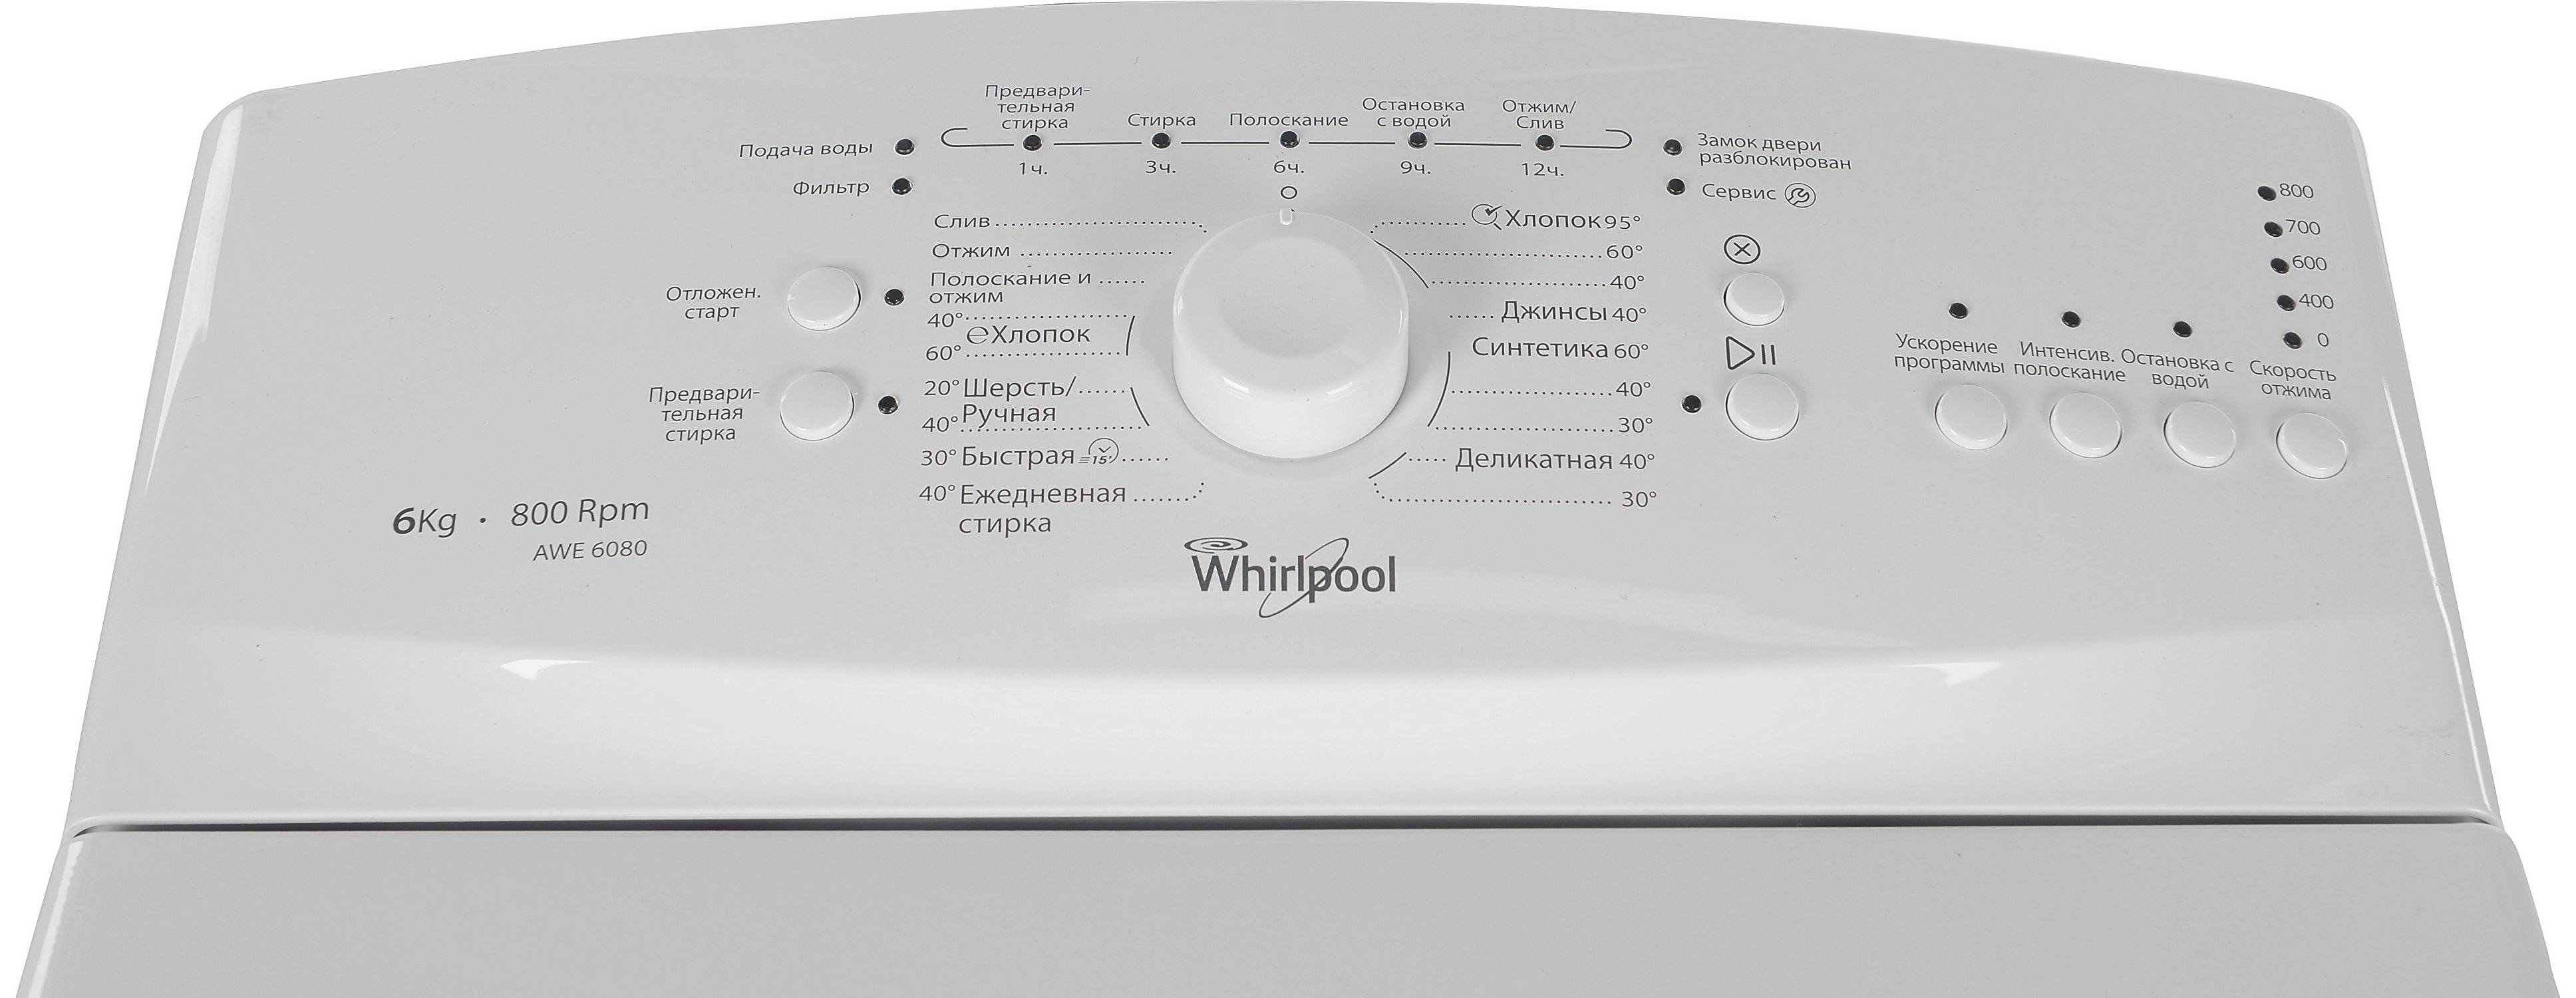 7 лучших стиральных машин whirlpool - разбираемся развернуто